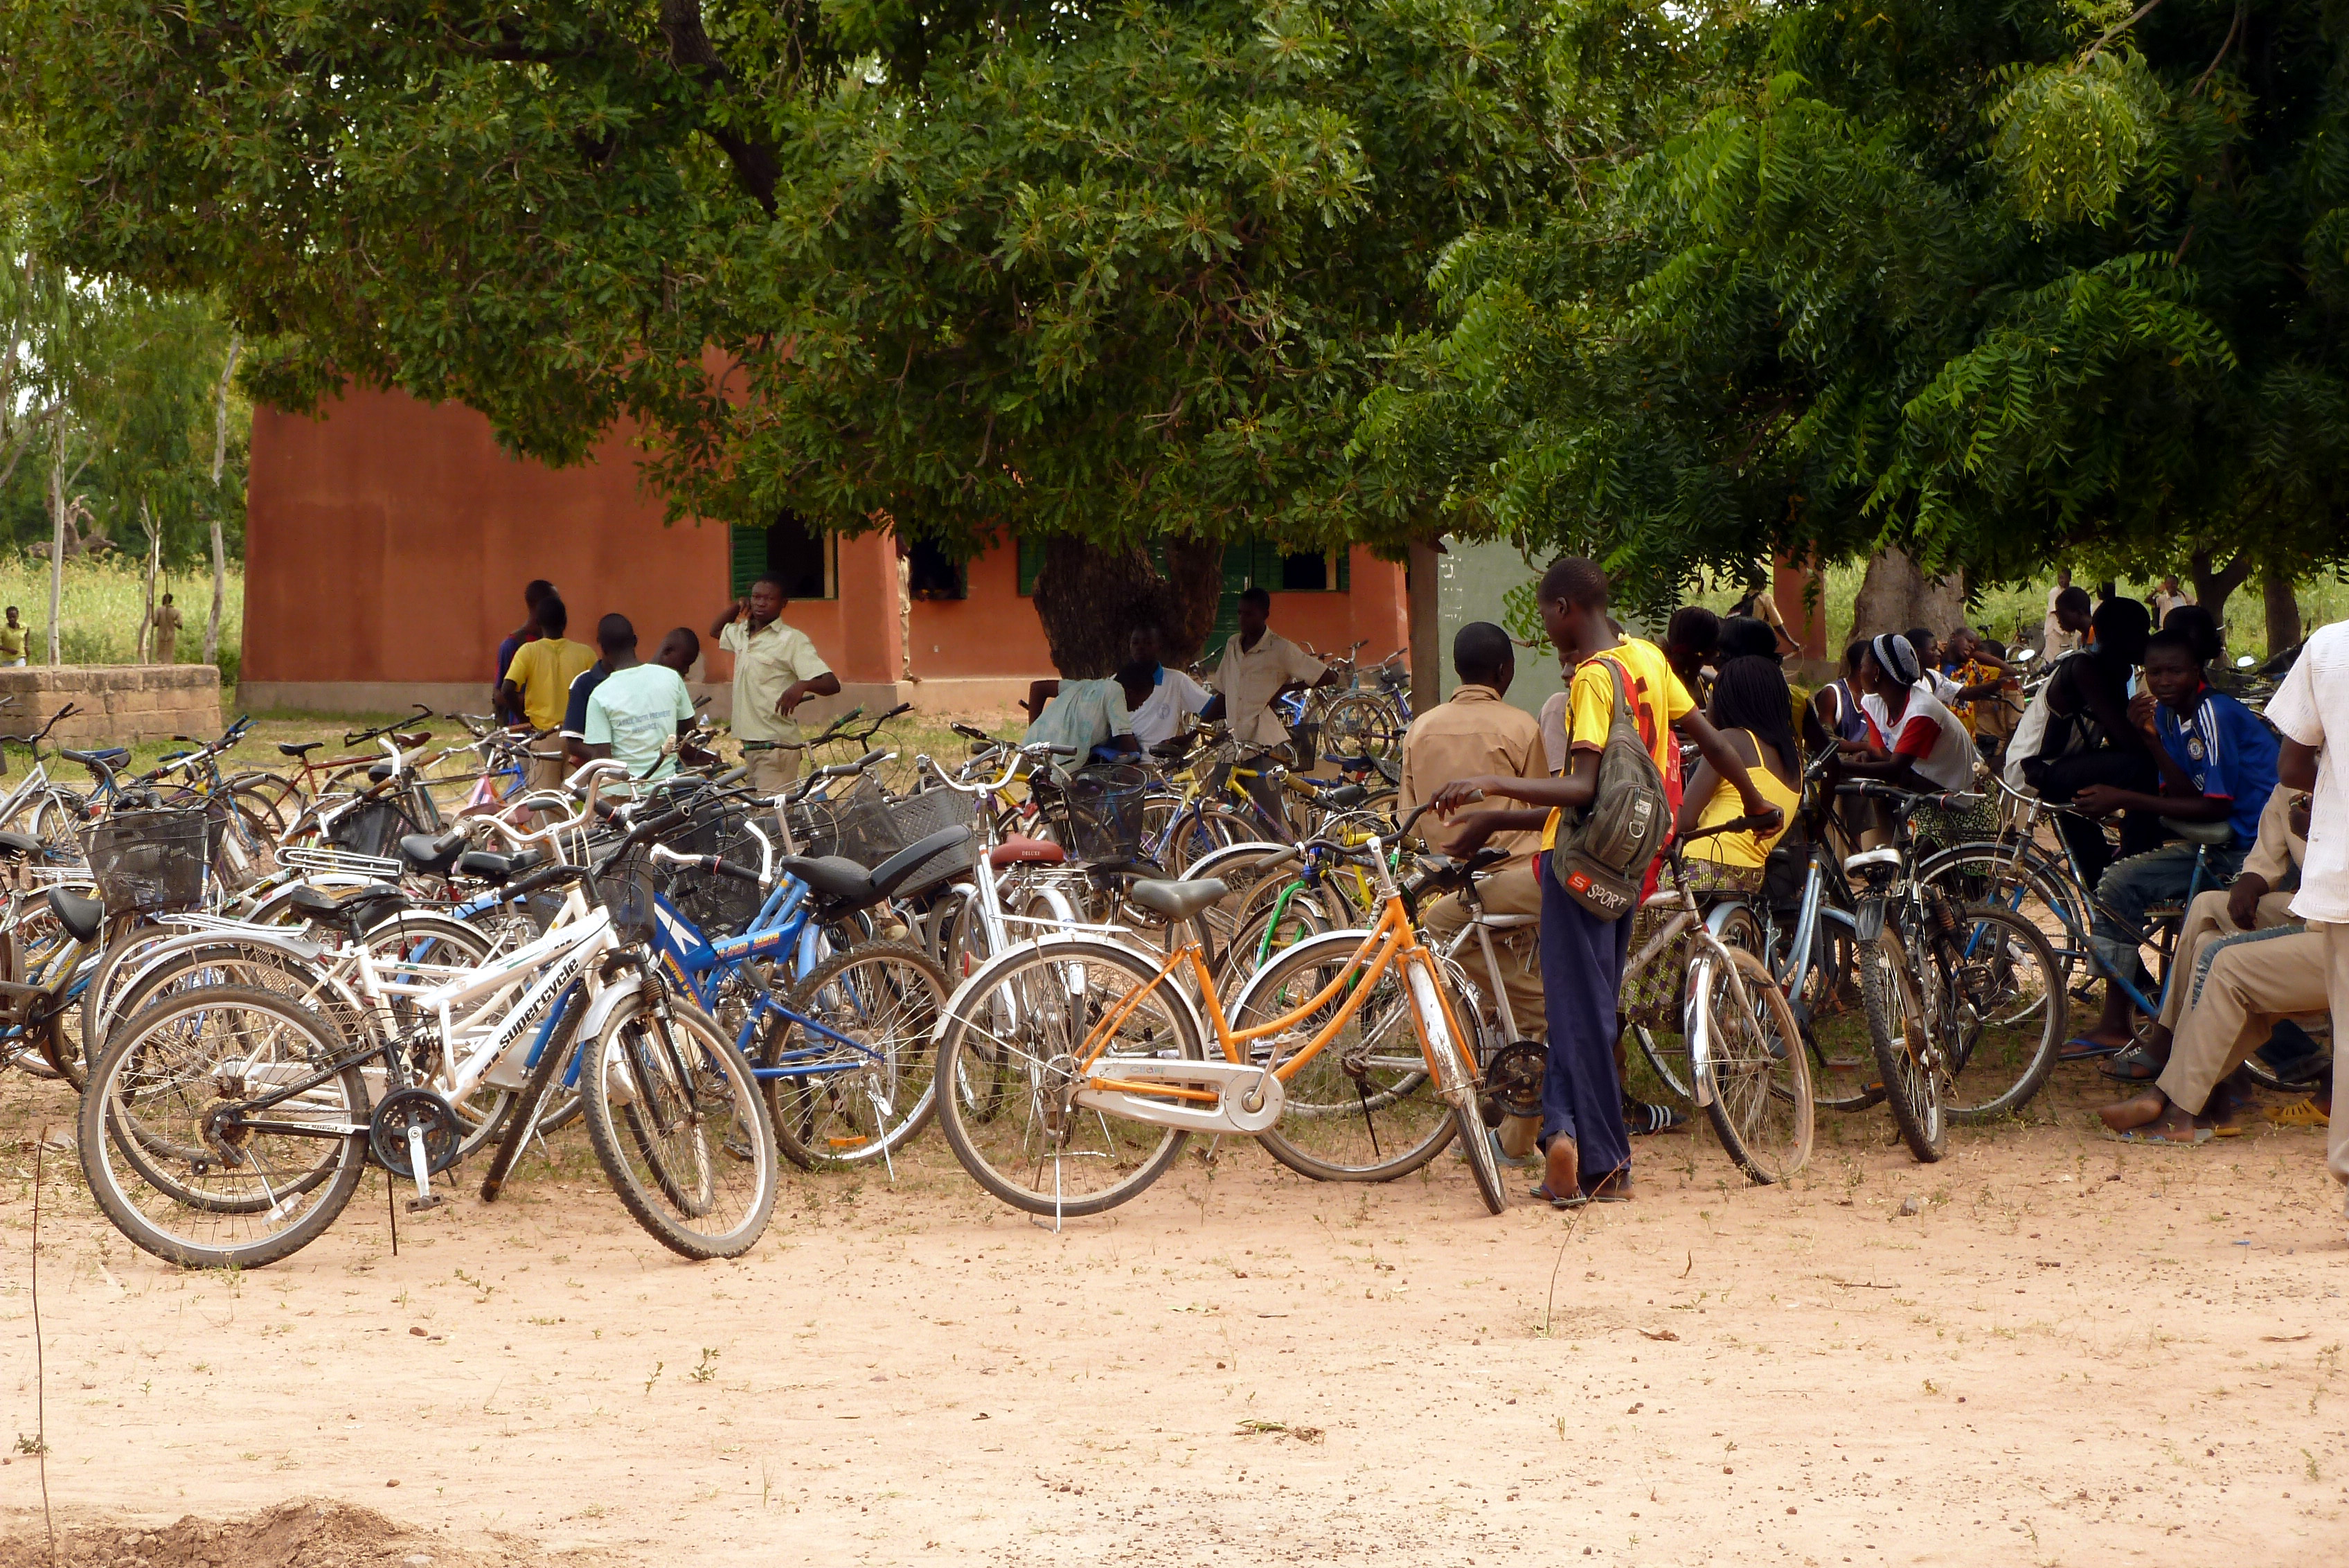 Jugendliche und ihre Fahrräder auf einem Platz in Burkina Faso